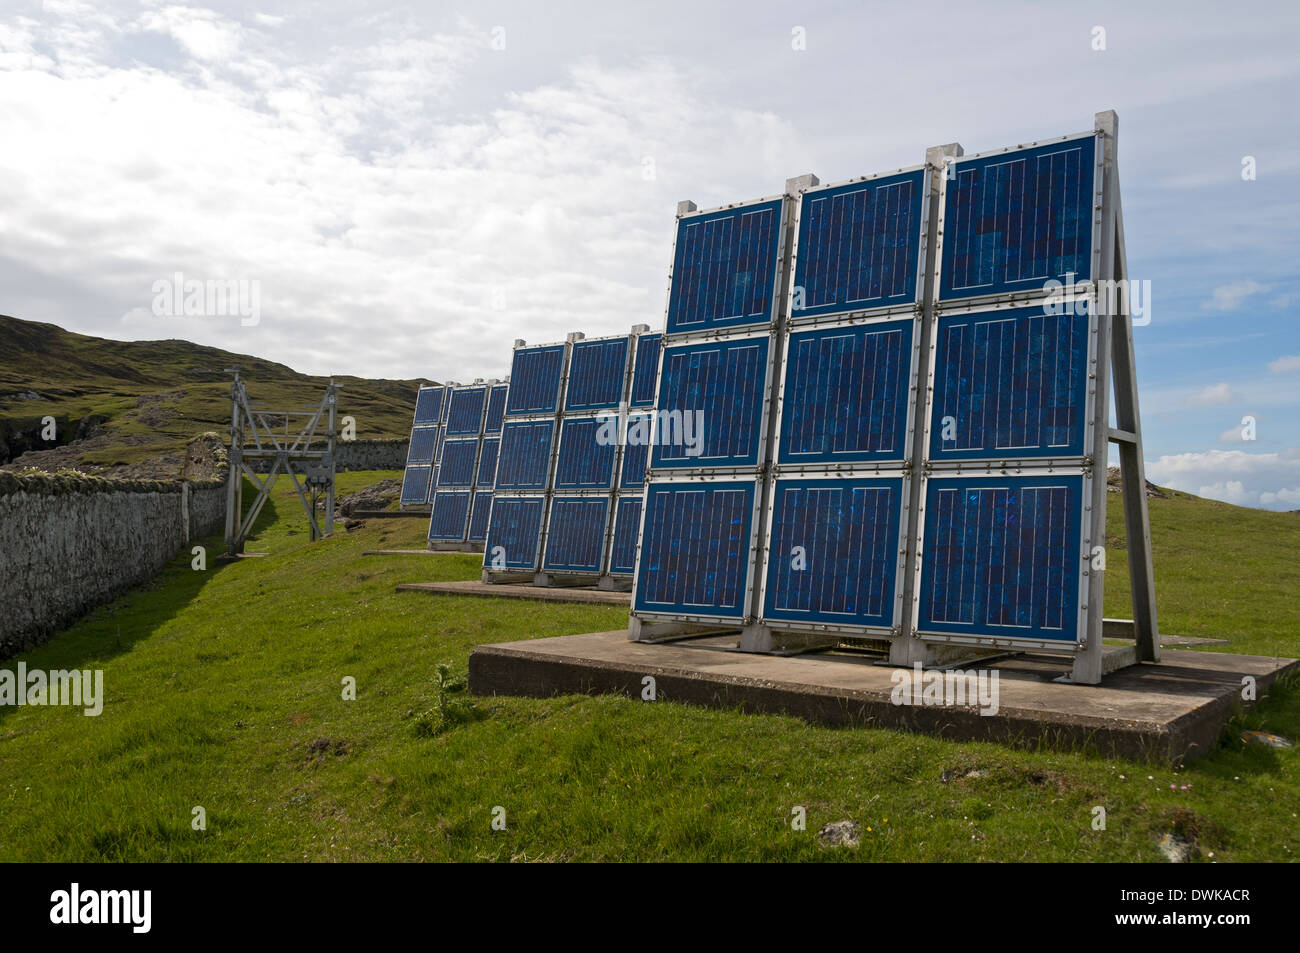 Solar panel array at Ushenish Lighthouse, South Uist, Western Isles, Scotland, UK Stock Photo